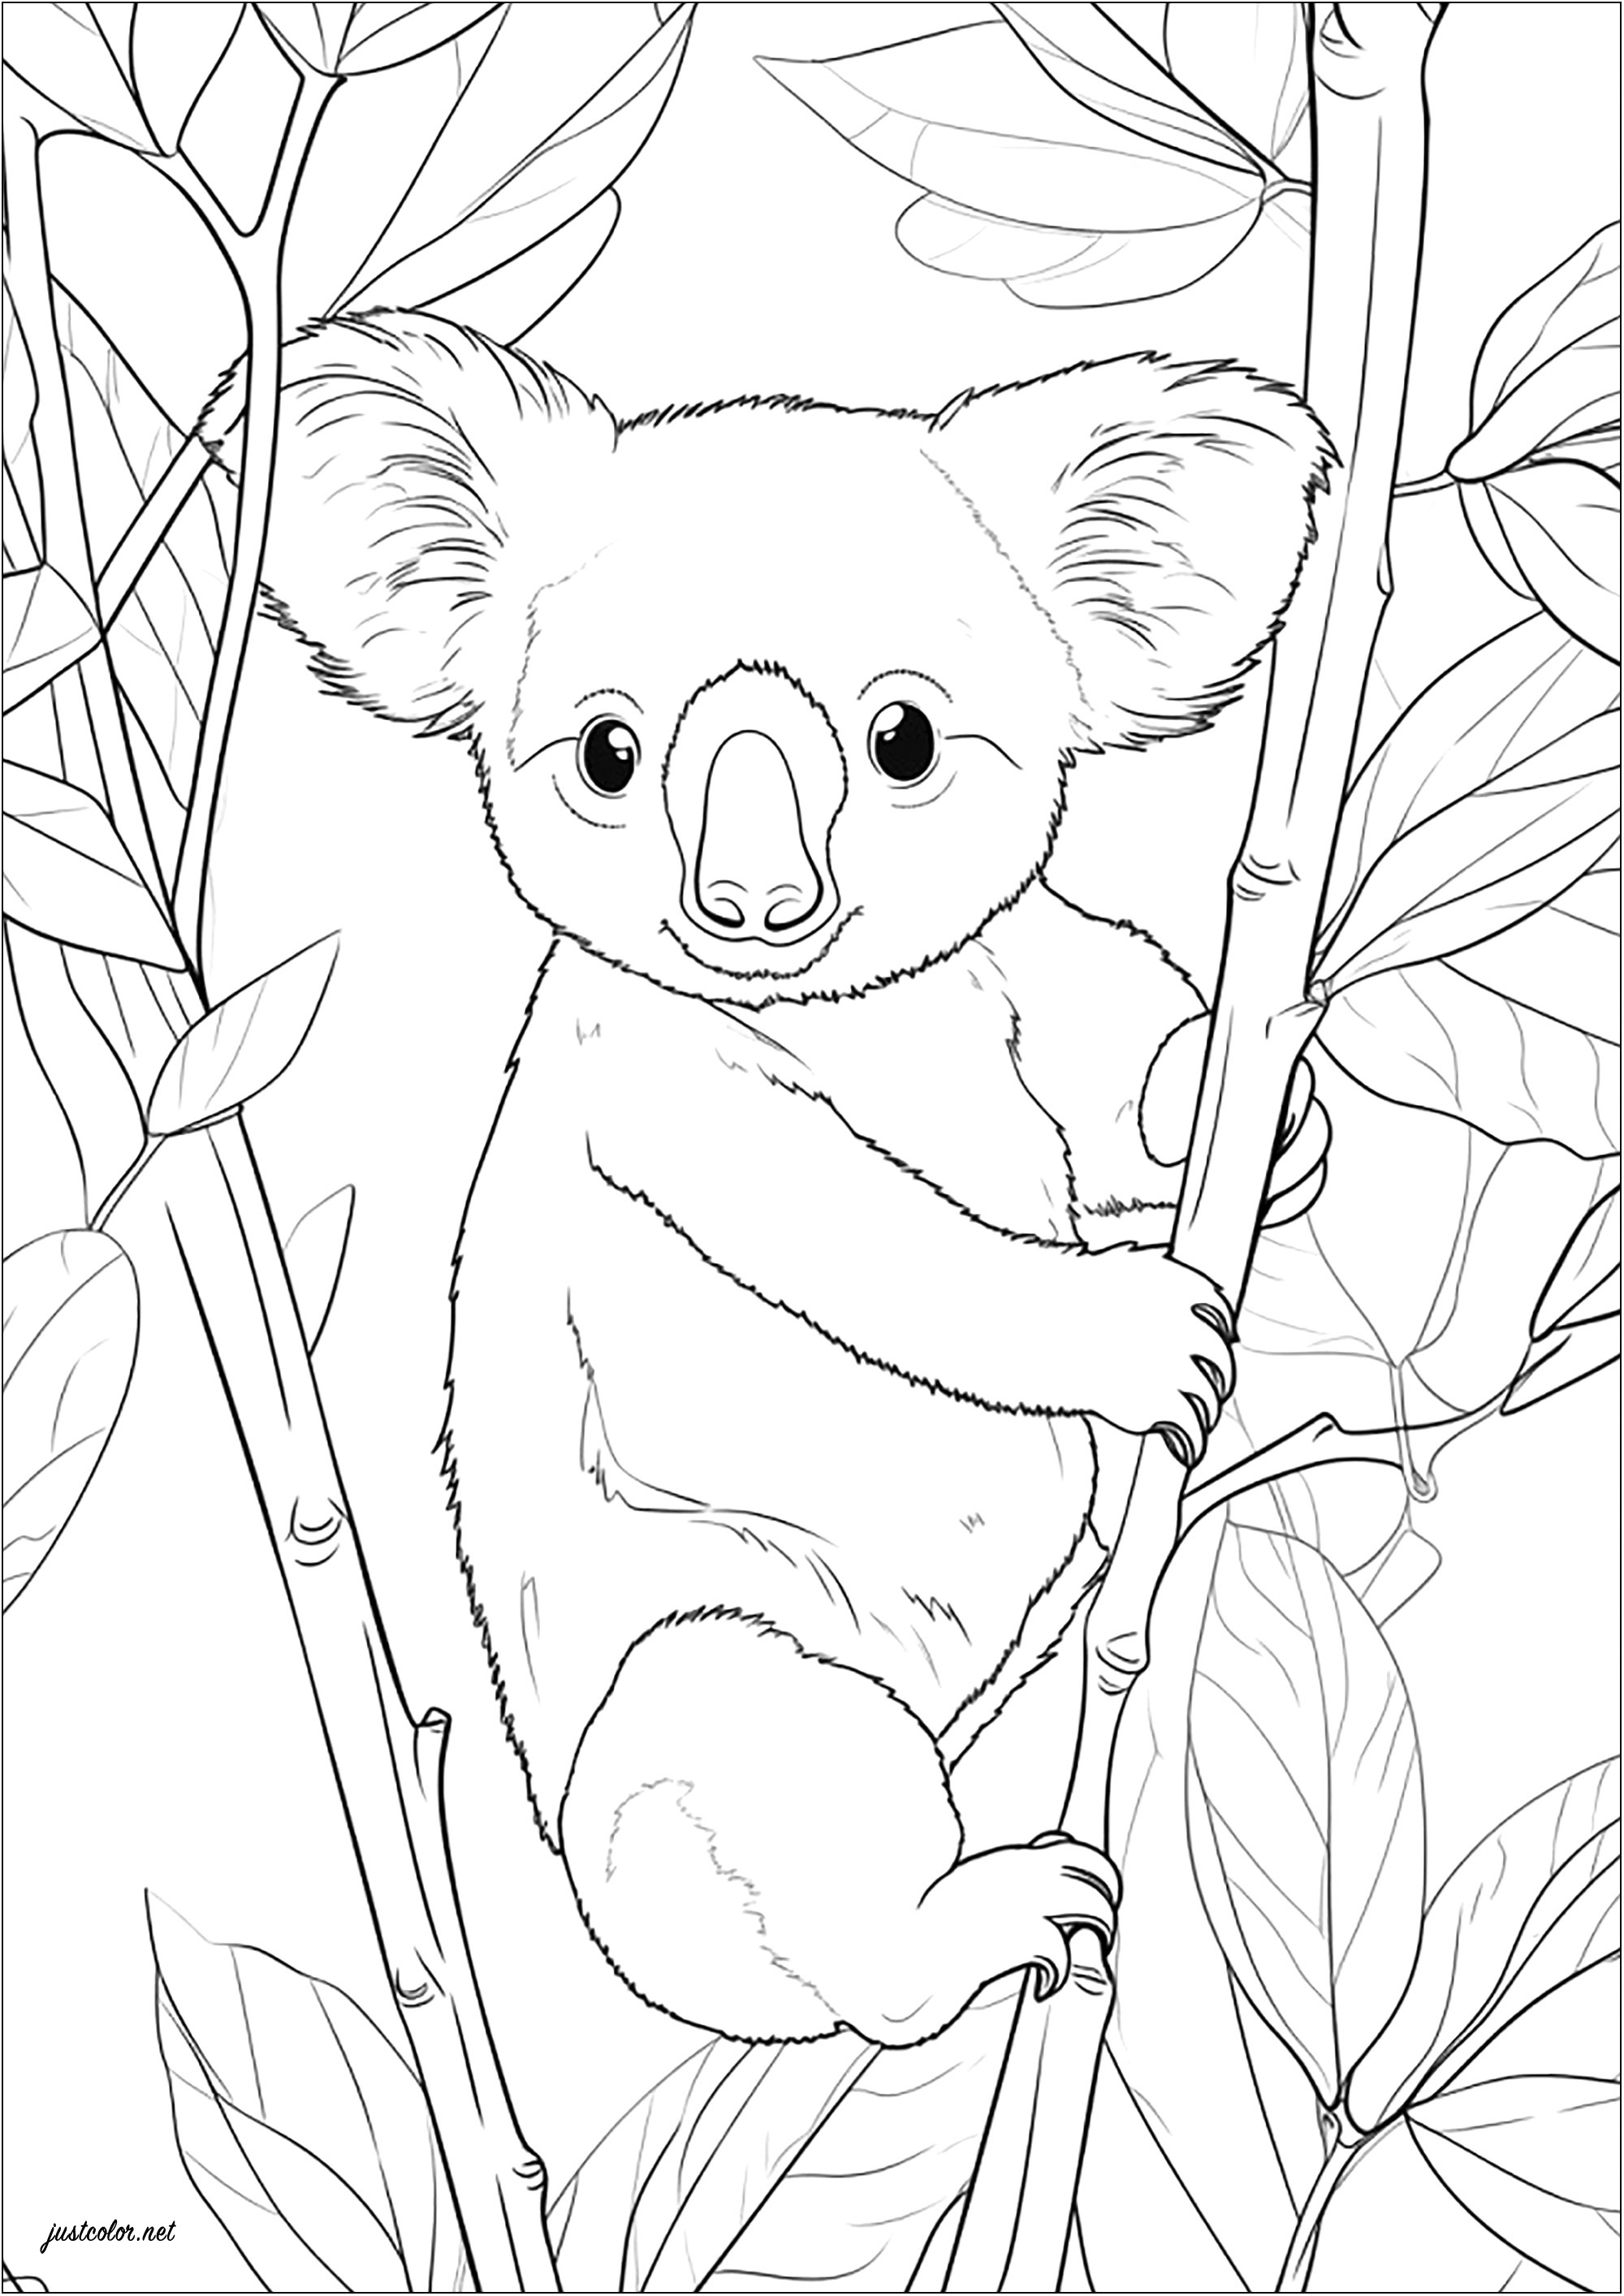 Dibujos para colorear de Osos Koala para descargar